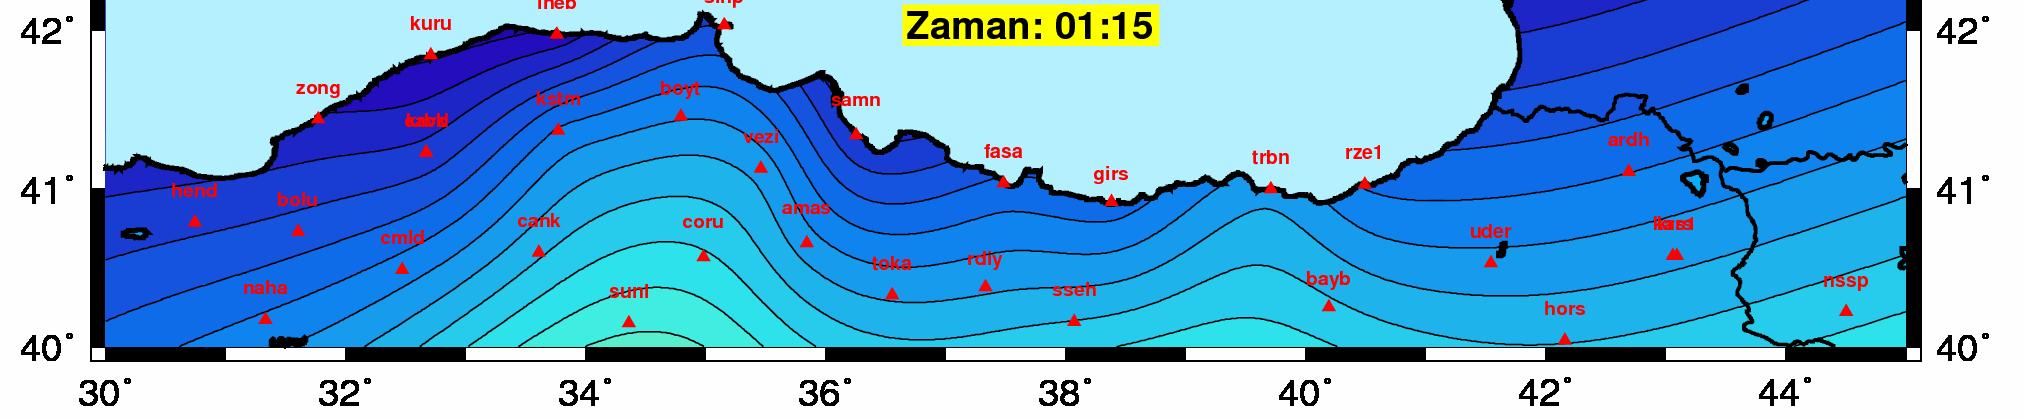 10-22 Temmuz 2009 tarihlerinde Bart n, Zonguldak ve Rize ba ta olmak üzere Karadeniz bölgesinin büyük k sm nda görülen sa anak ya lar n ayn bölgedeki TUSAGA-Aktif a na ait GPS istasyonlar ndan elde